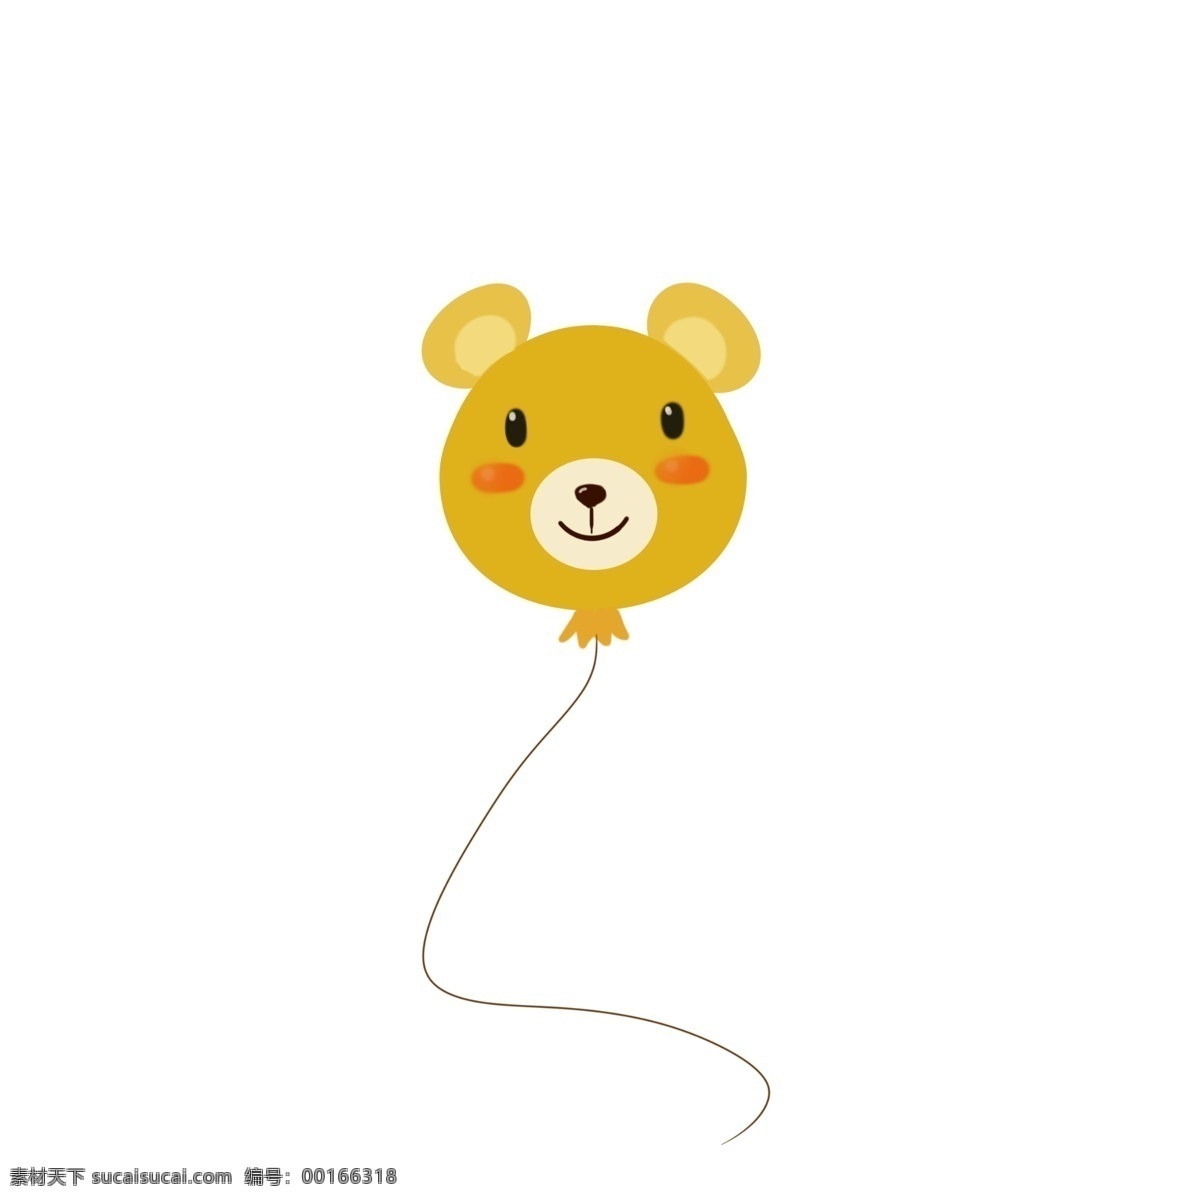 小熊气球 小熊 气球 棕色 黄色 可爱 孩子